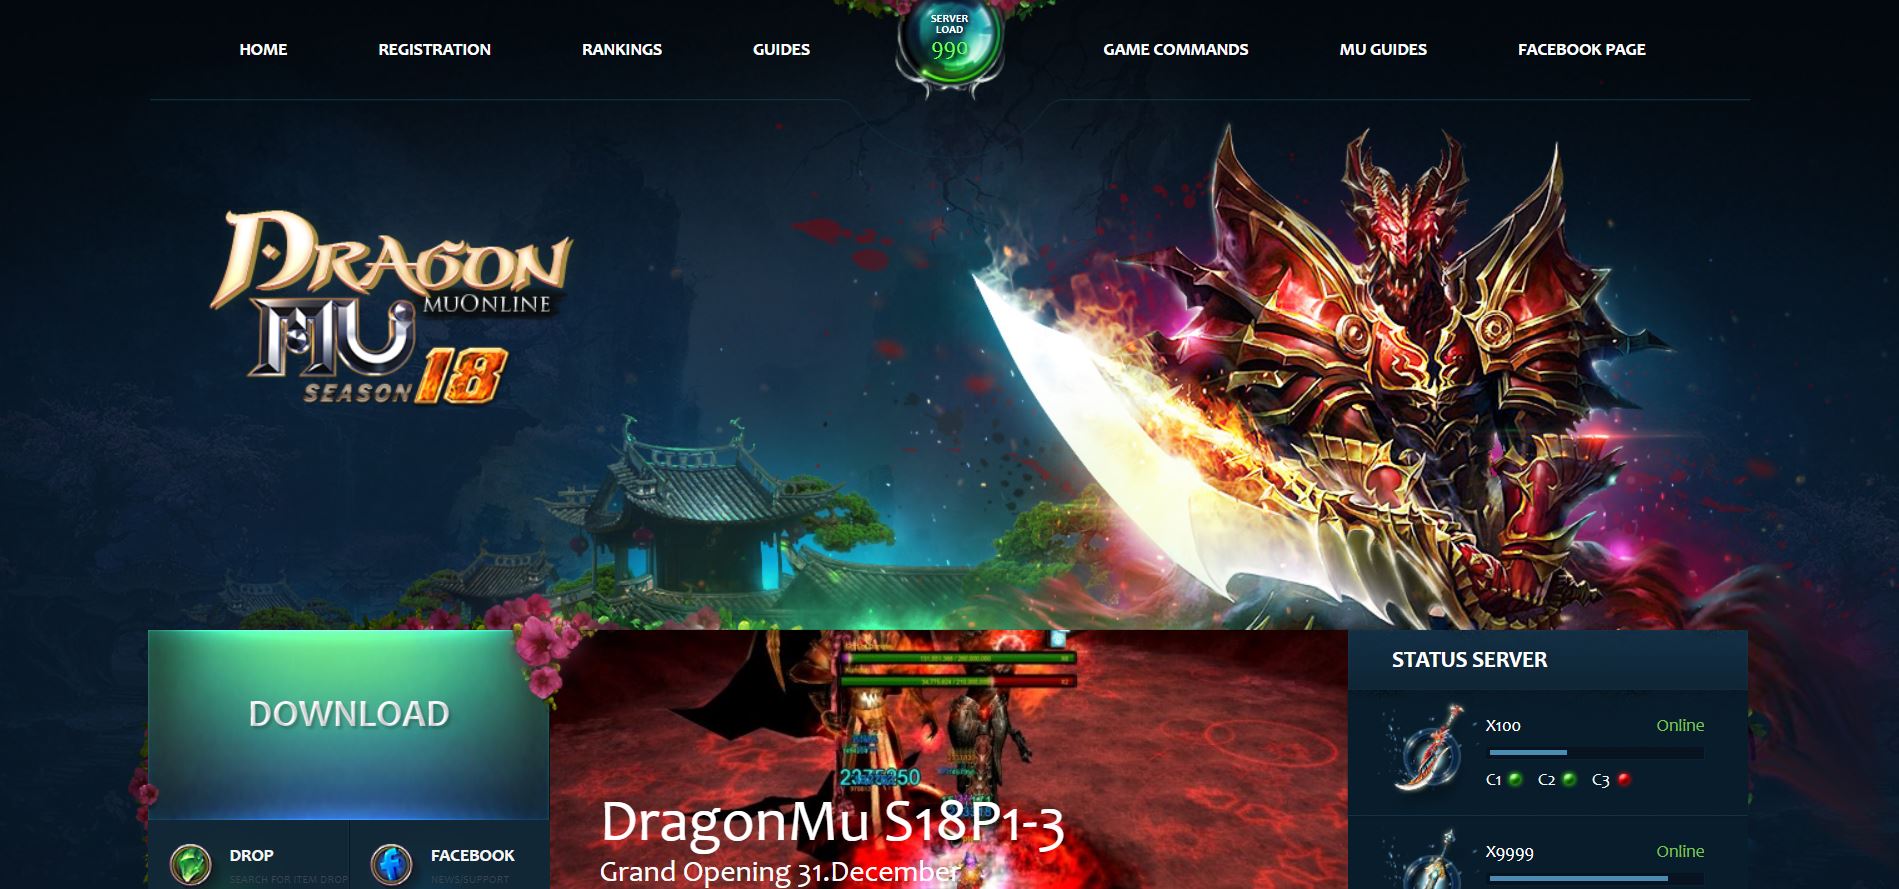 🐉 ¡Abre las Puertas del Dragón! MuOnline Season 18 x999k - Dragonmu.net 🐉